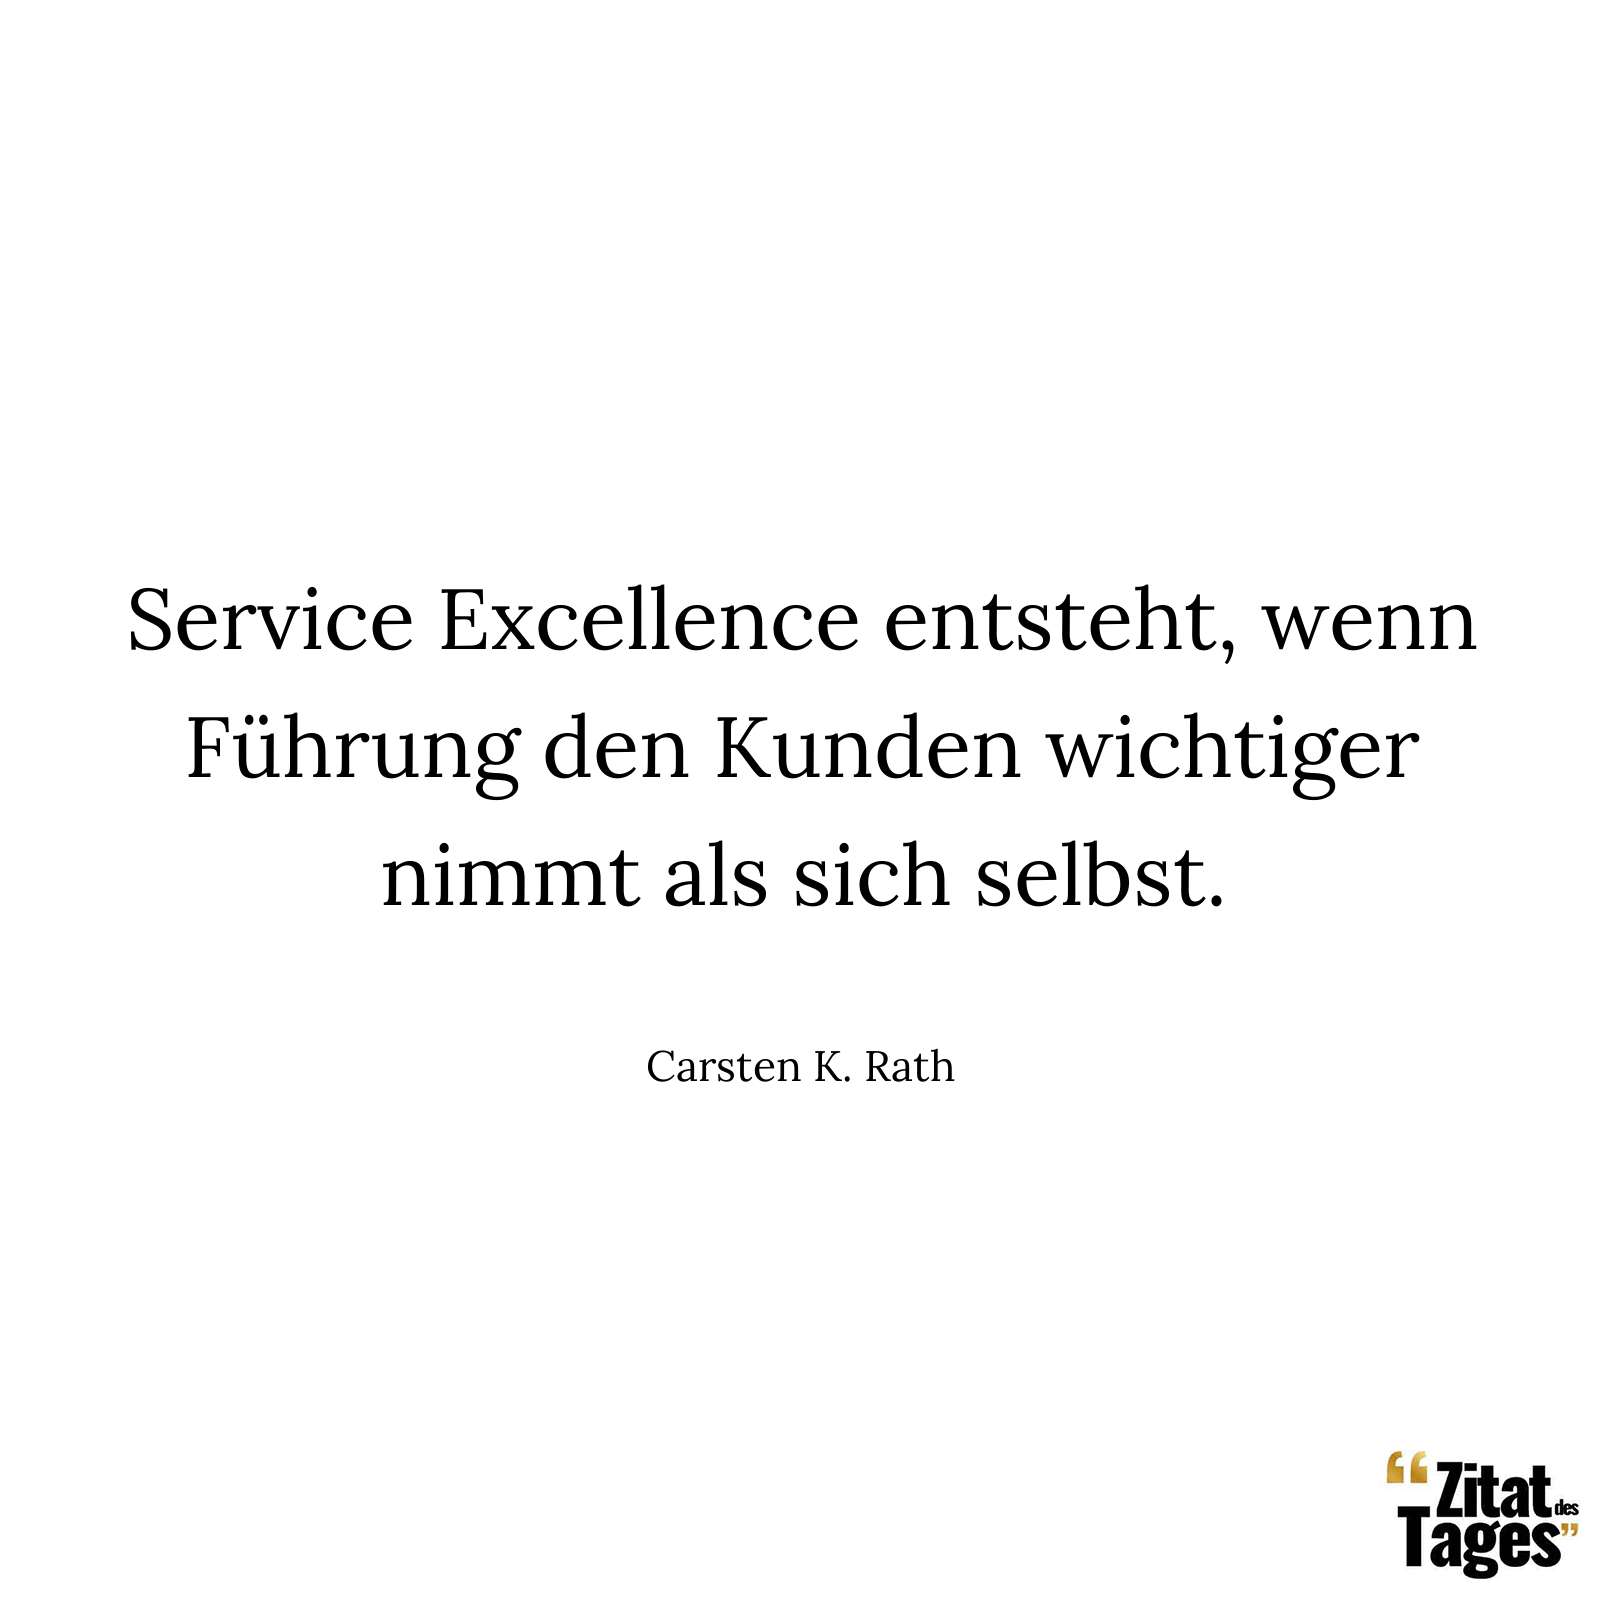 Service Excellence entsteht, wenn Führung den Kunden wichtiger nimmt als sich selbst. - Carsten K. Rath